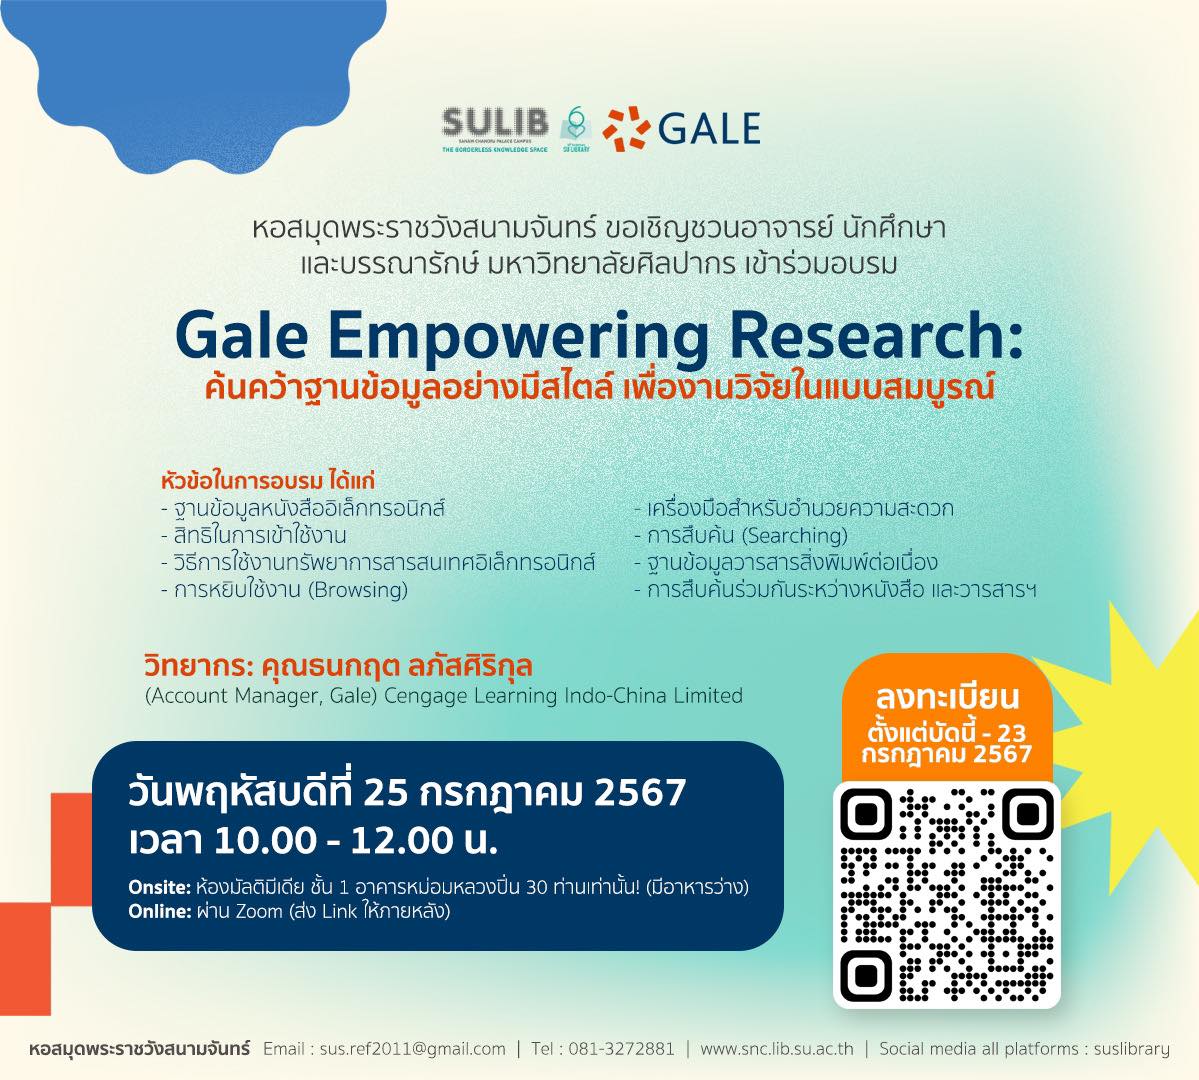 ขอเชิญชวนอาจารย์ นักศึกษา และบรรณารักษ์ มหาวิทยาลัยศิลปากร เข้าร่วมอบรม Gale Empowering Research: ค้นคว้าฐานข้อมูลอย่างมีสไตล์ เพื่องานวิจัยในแบบสมบูรณ์